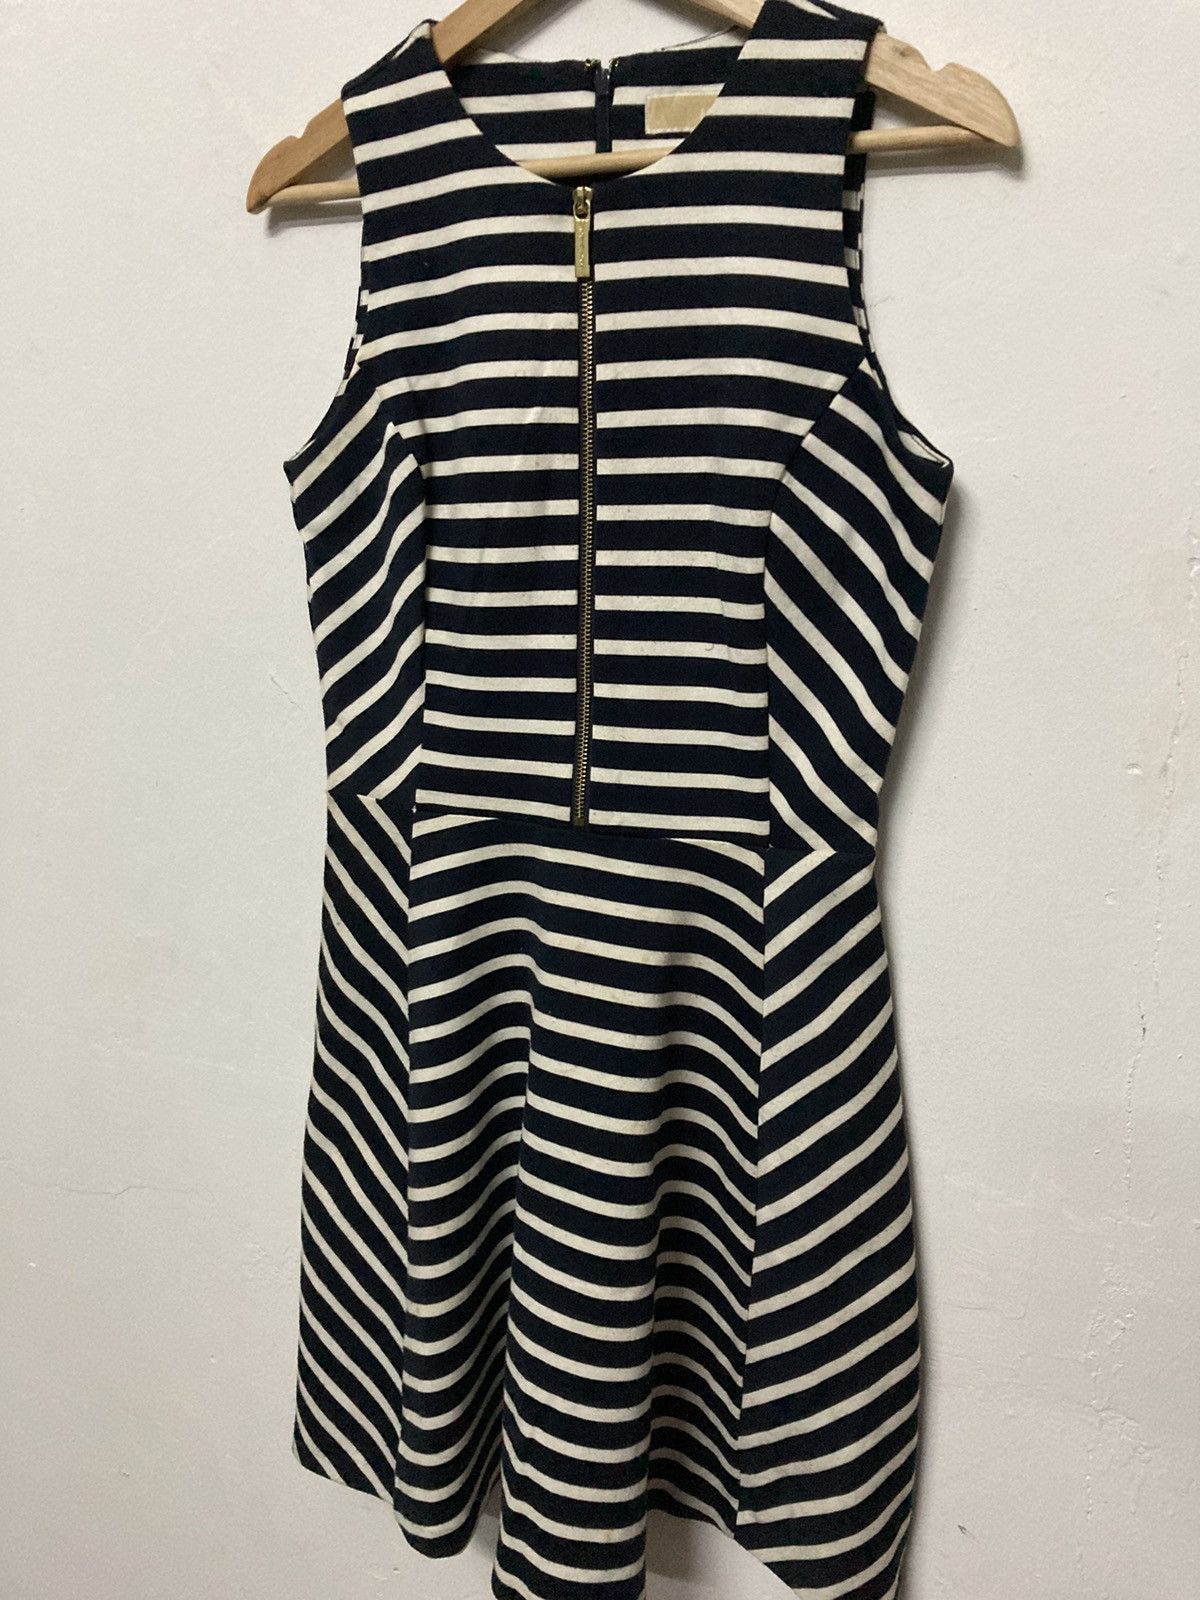 Michael Kors Sleeveless Striped Front Zip A Line Women Dress - 4